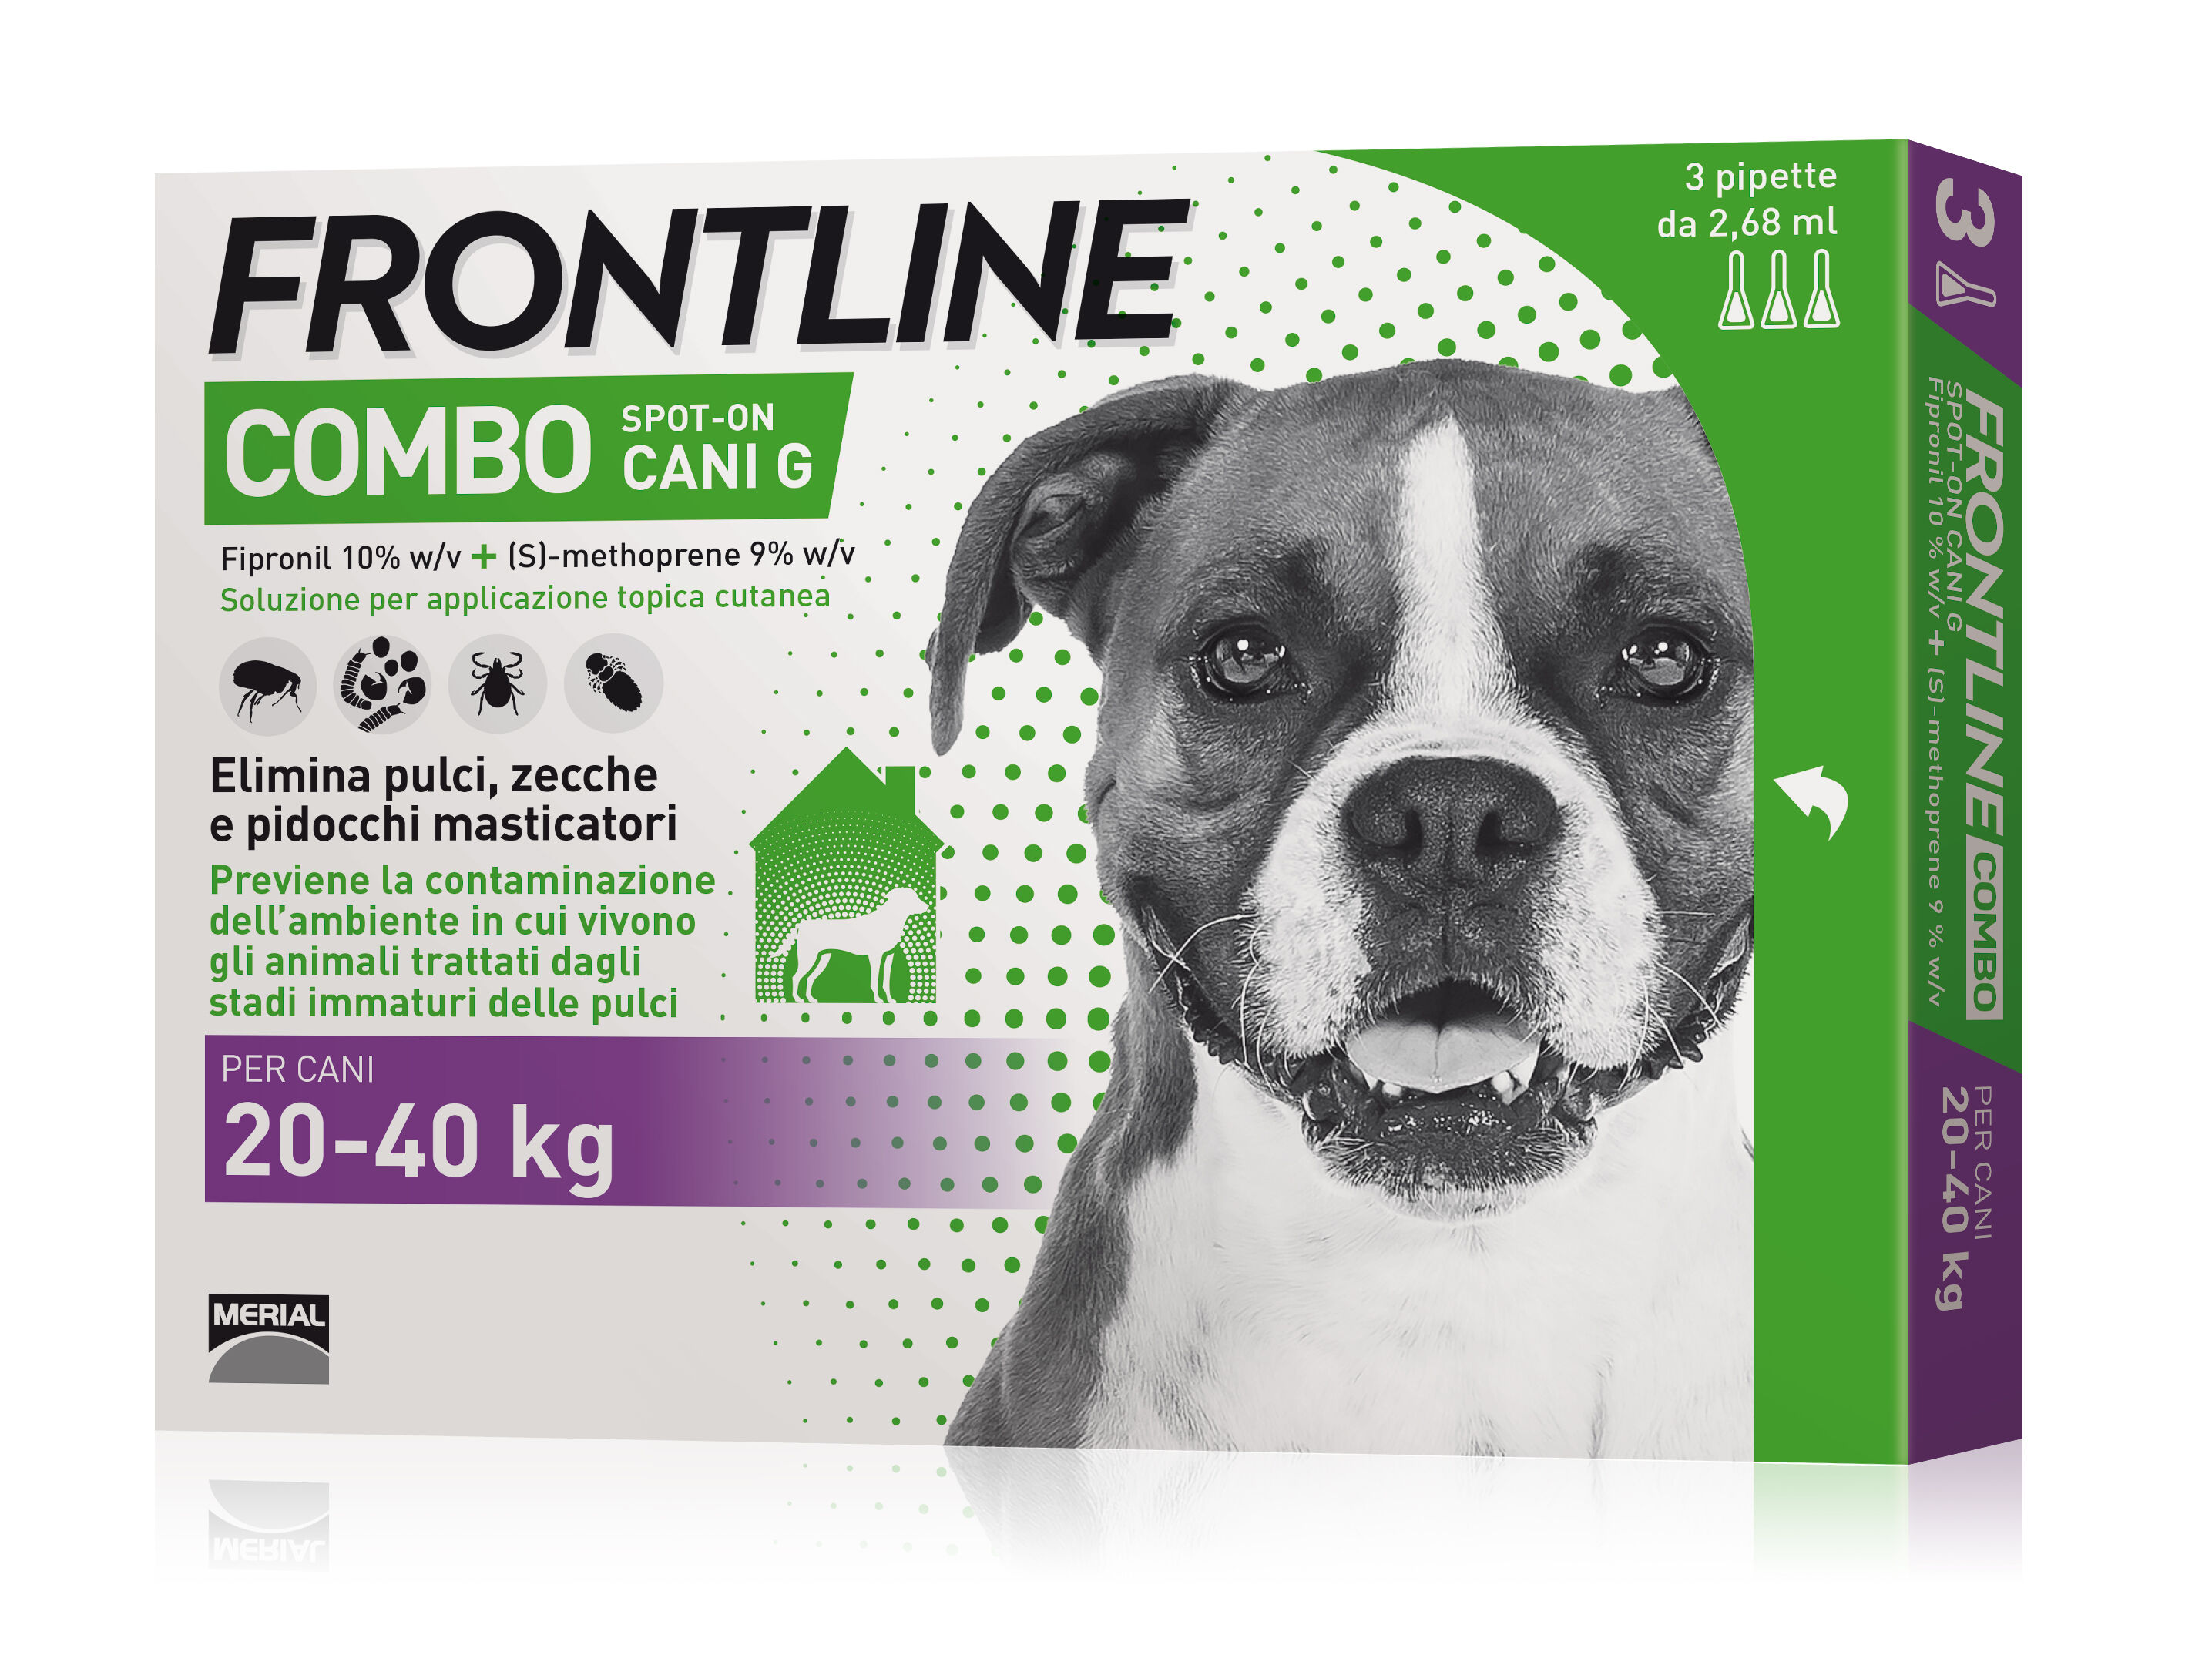 boehringer vet frontline frontline combo spot-on cani 3 pipette da 2,68ml 20-40kg - protezione antiparassitaria per cani di taglia media